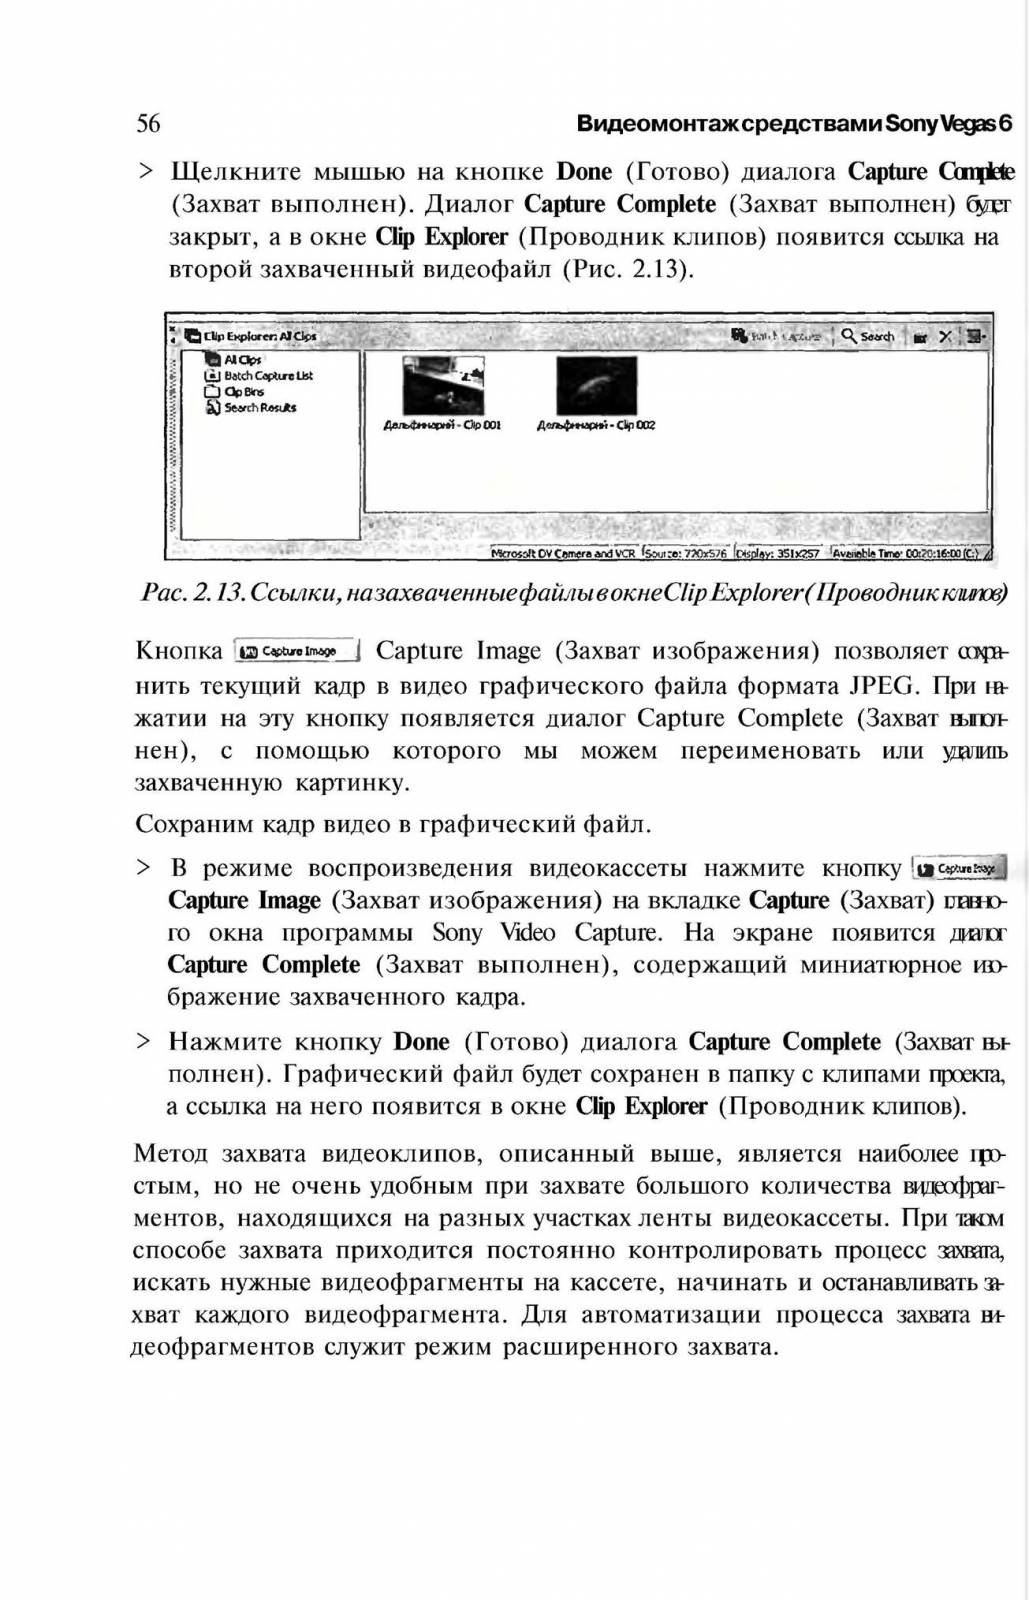 http://redaktori-uroki.3dn.ru/_ph/13/161810336.jpg